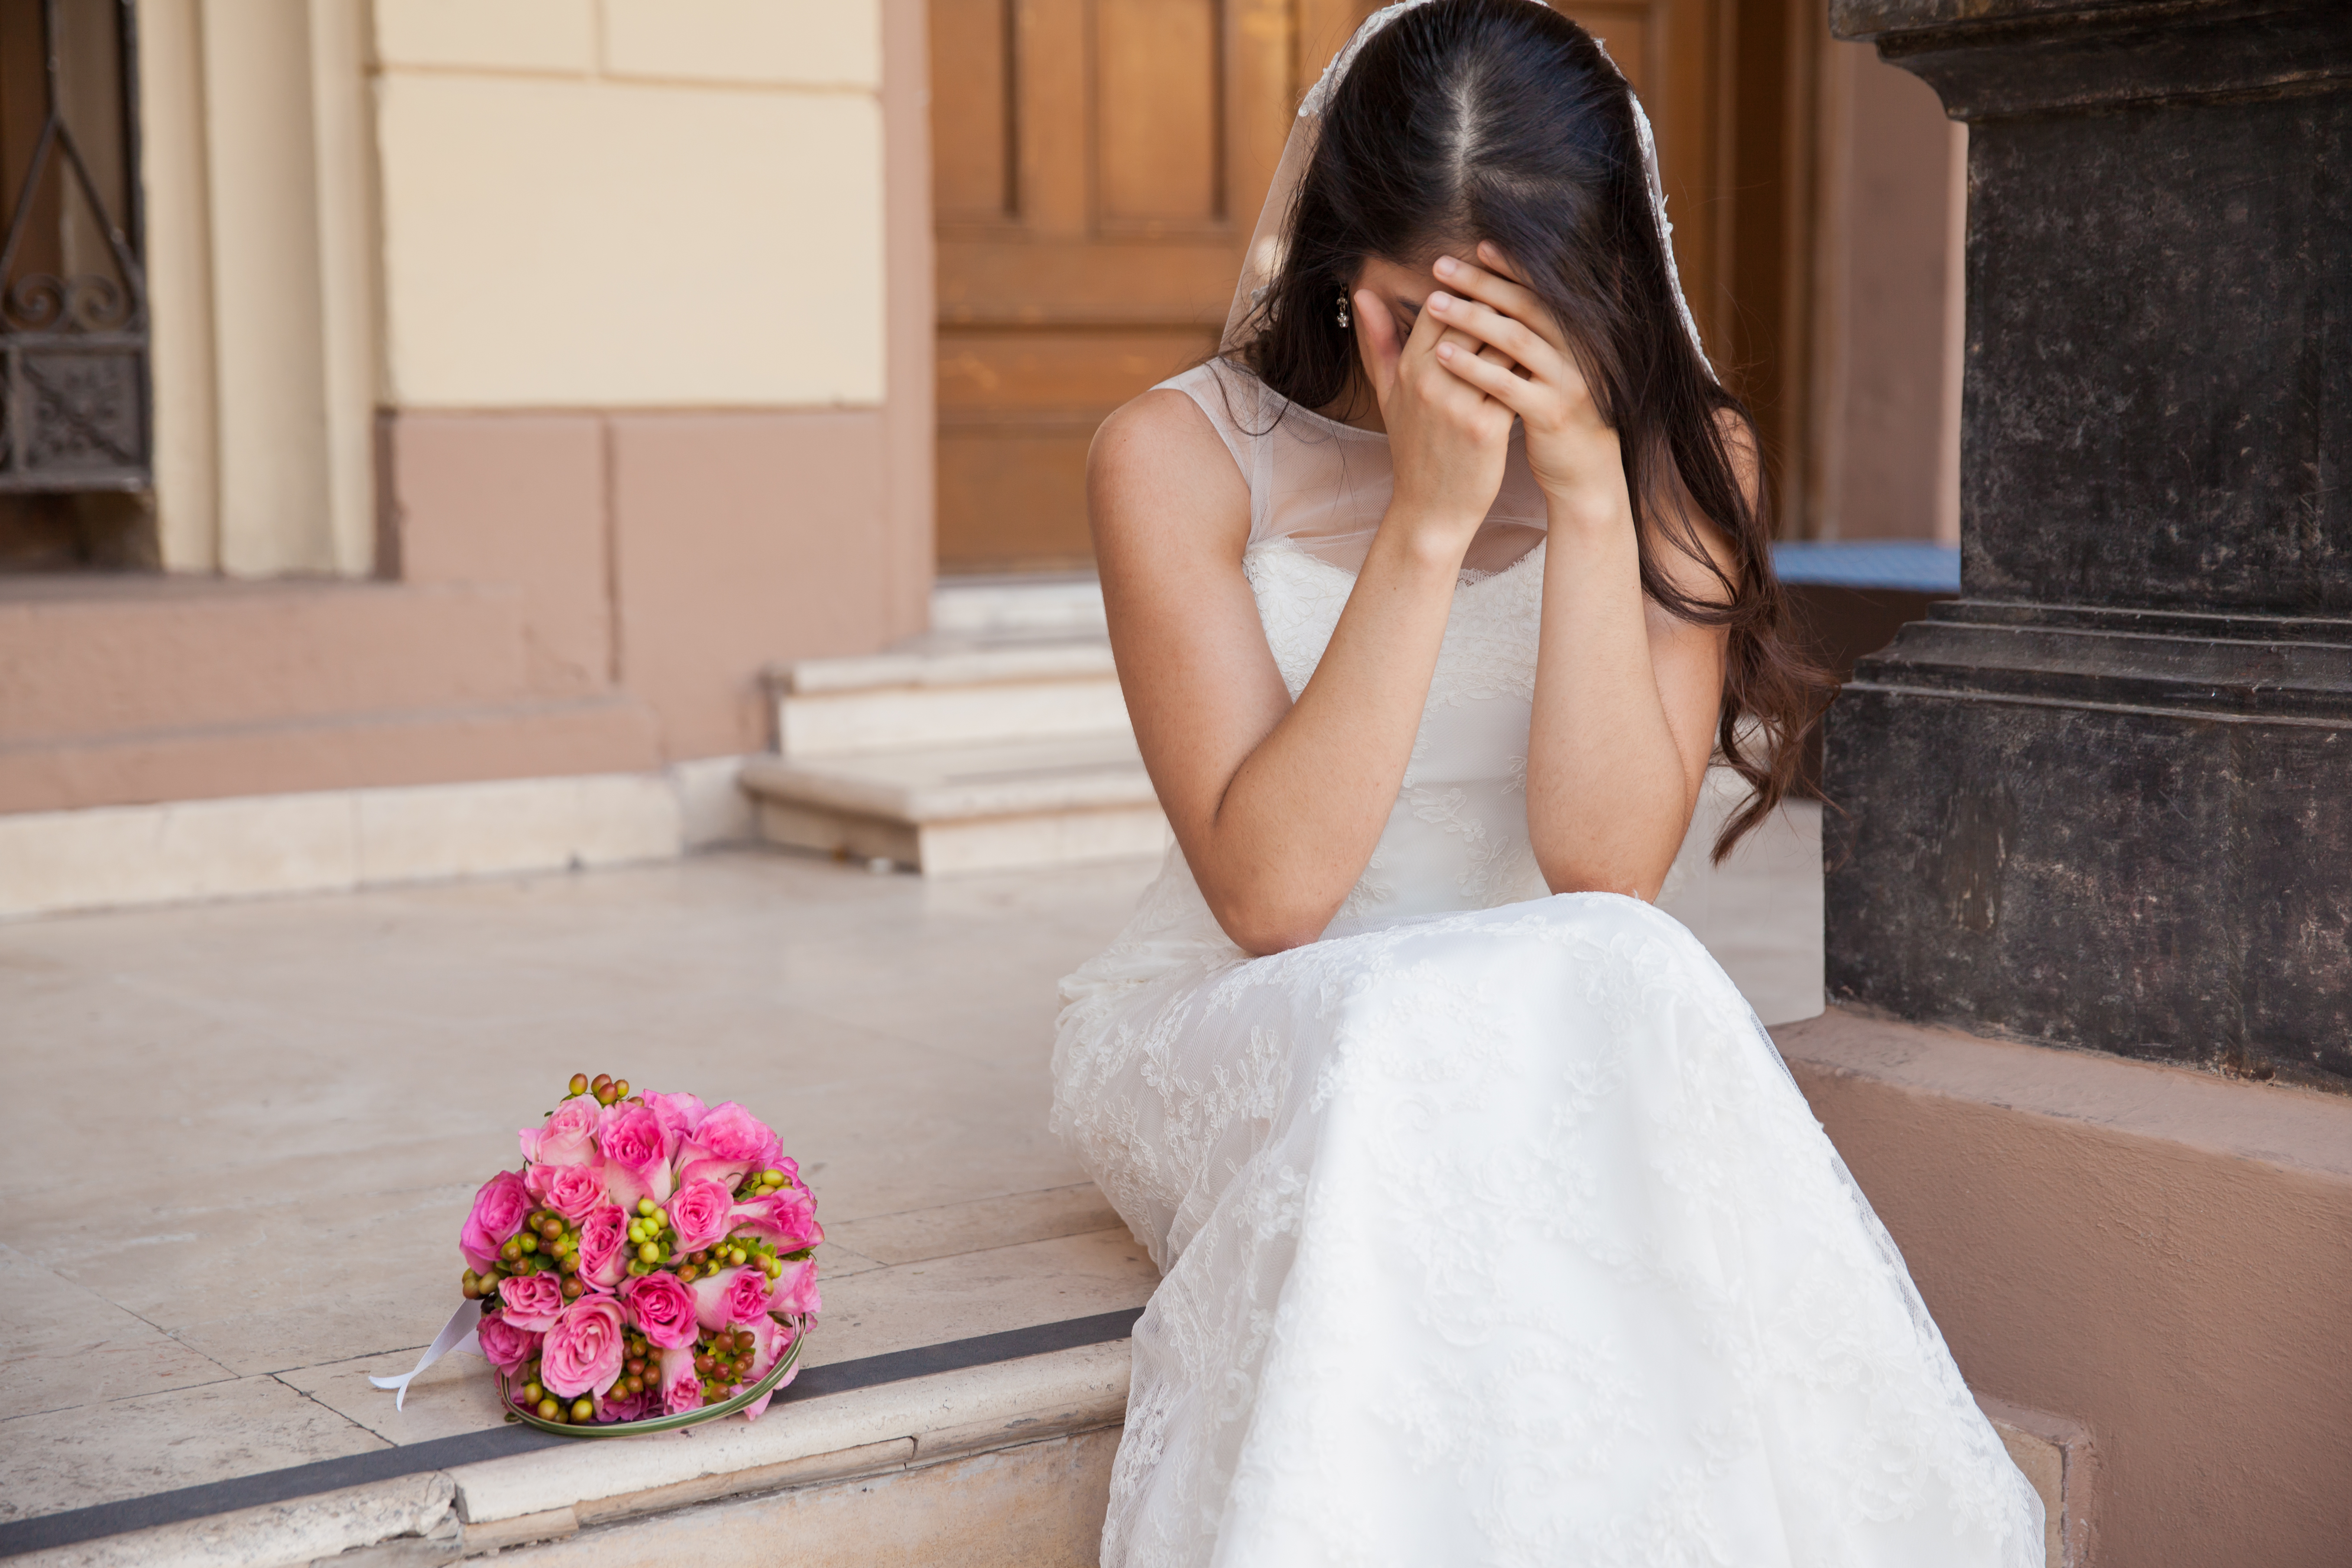 Eine hoffnungslose Braut weint an ihrem Hochzeitstag | Quelle: Shutterstock